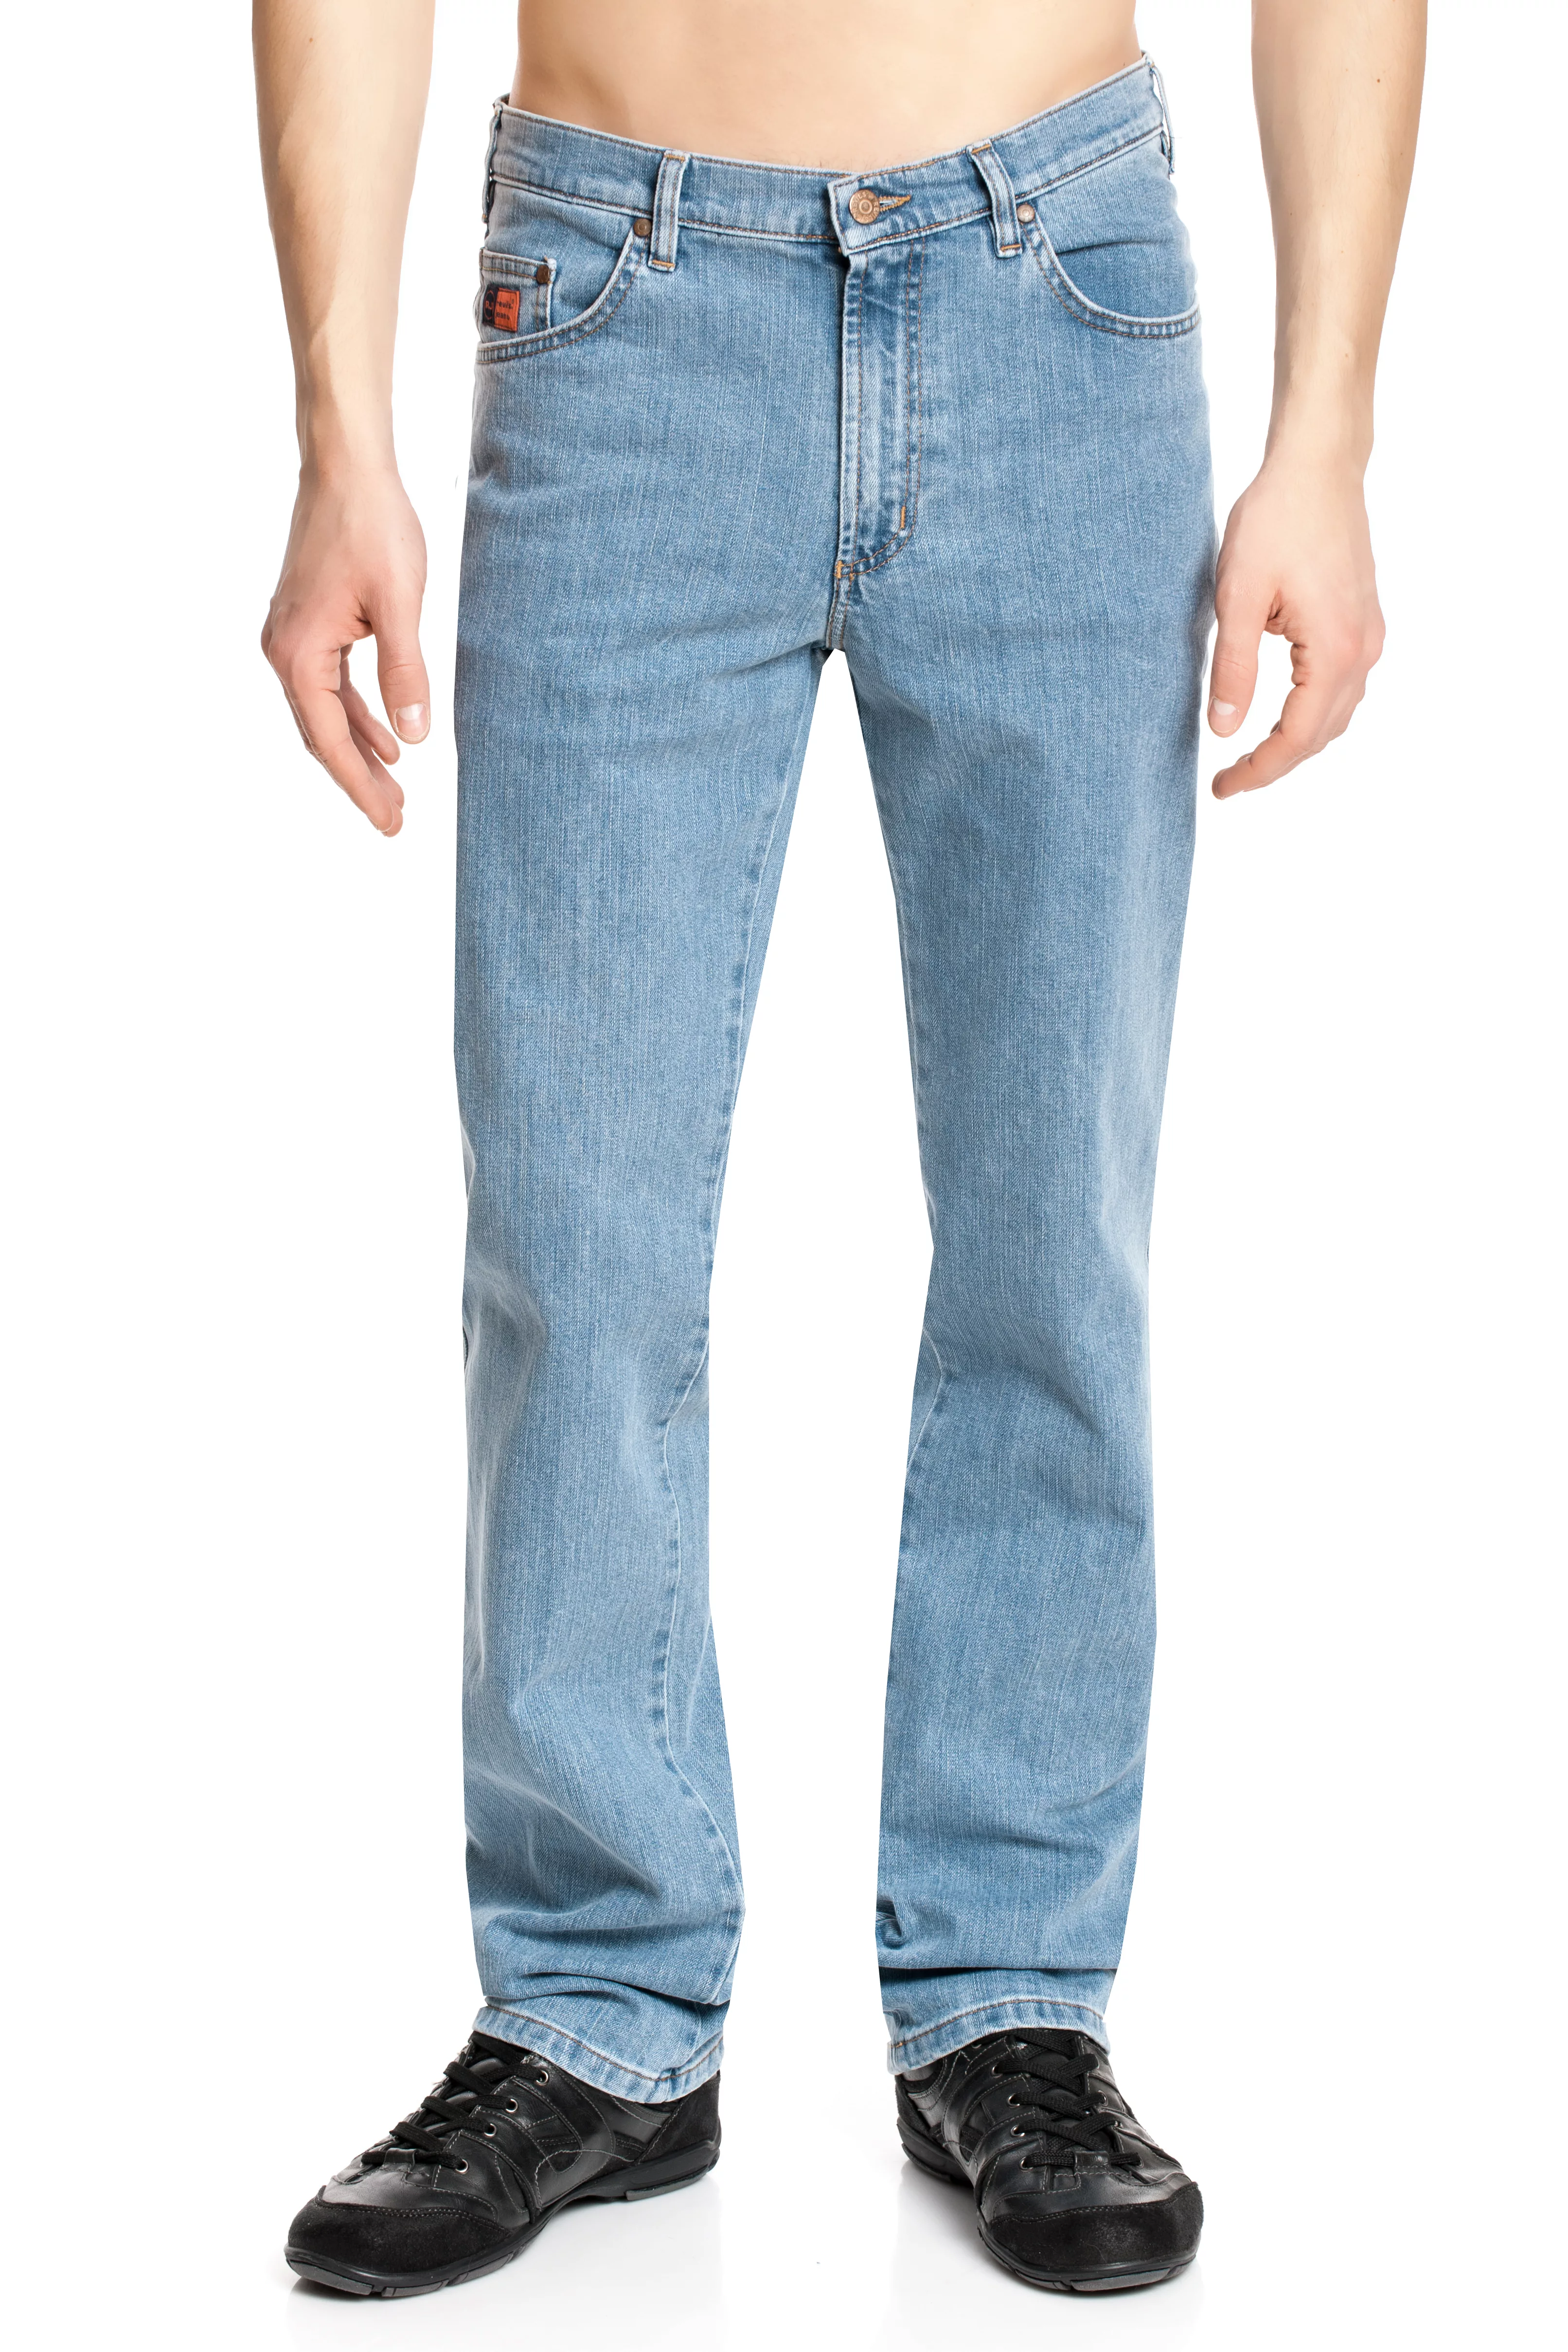 Revils 302 Five Pocket Classic Jeans bis Länge 38 günstig online kaufen